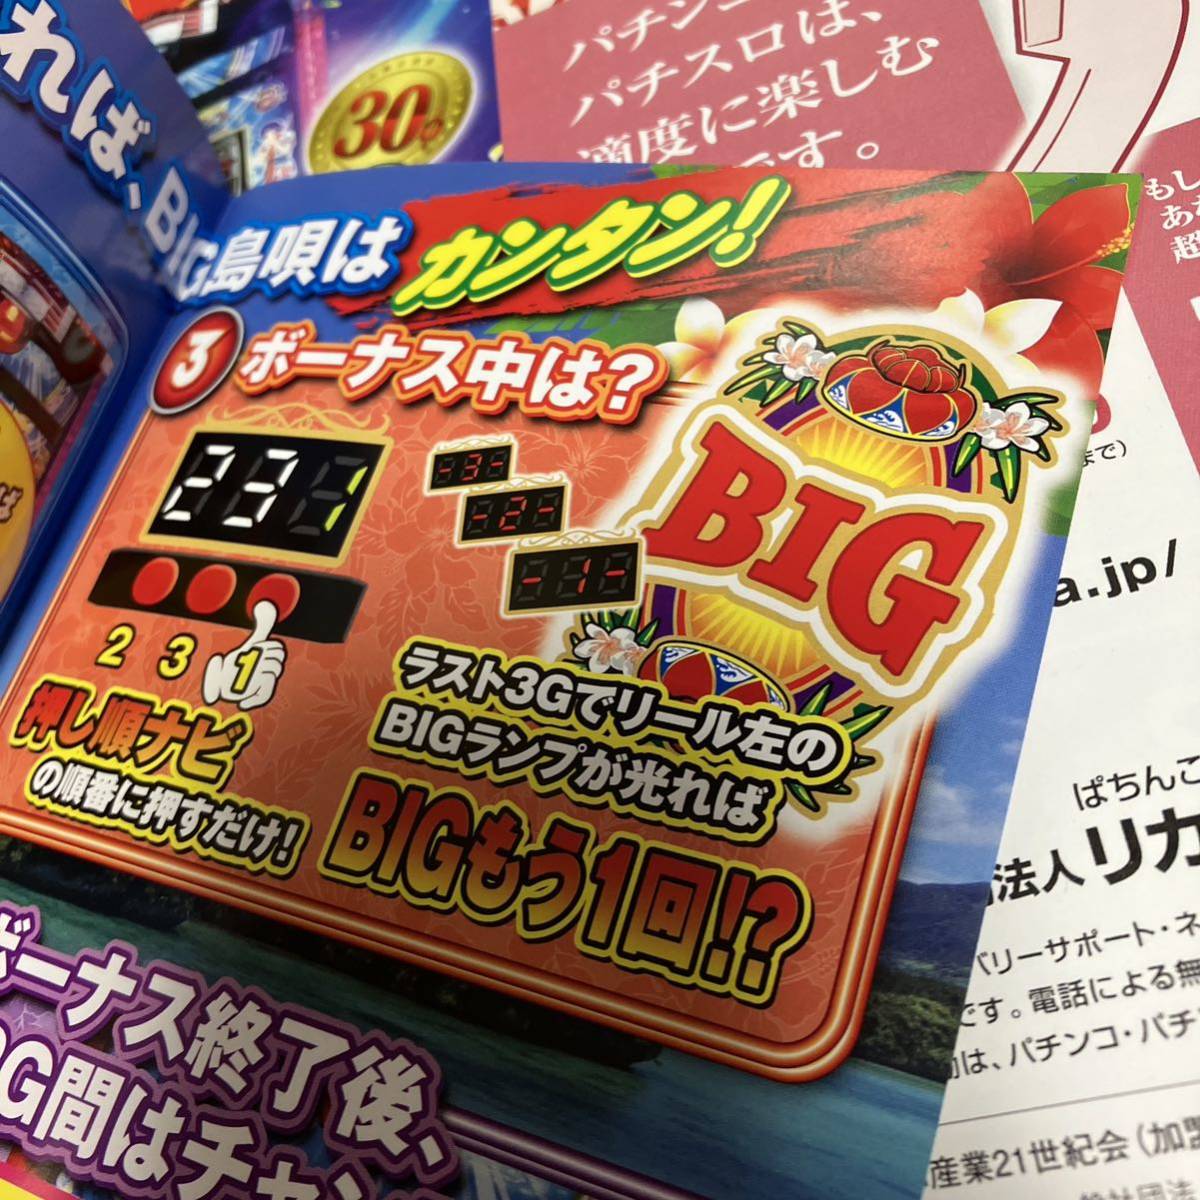 BIG остров .chi шероховатость yo игровой автомат маленький брошюра 4 шт. комплект * прекрасный товар быстрое решение 